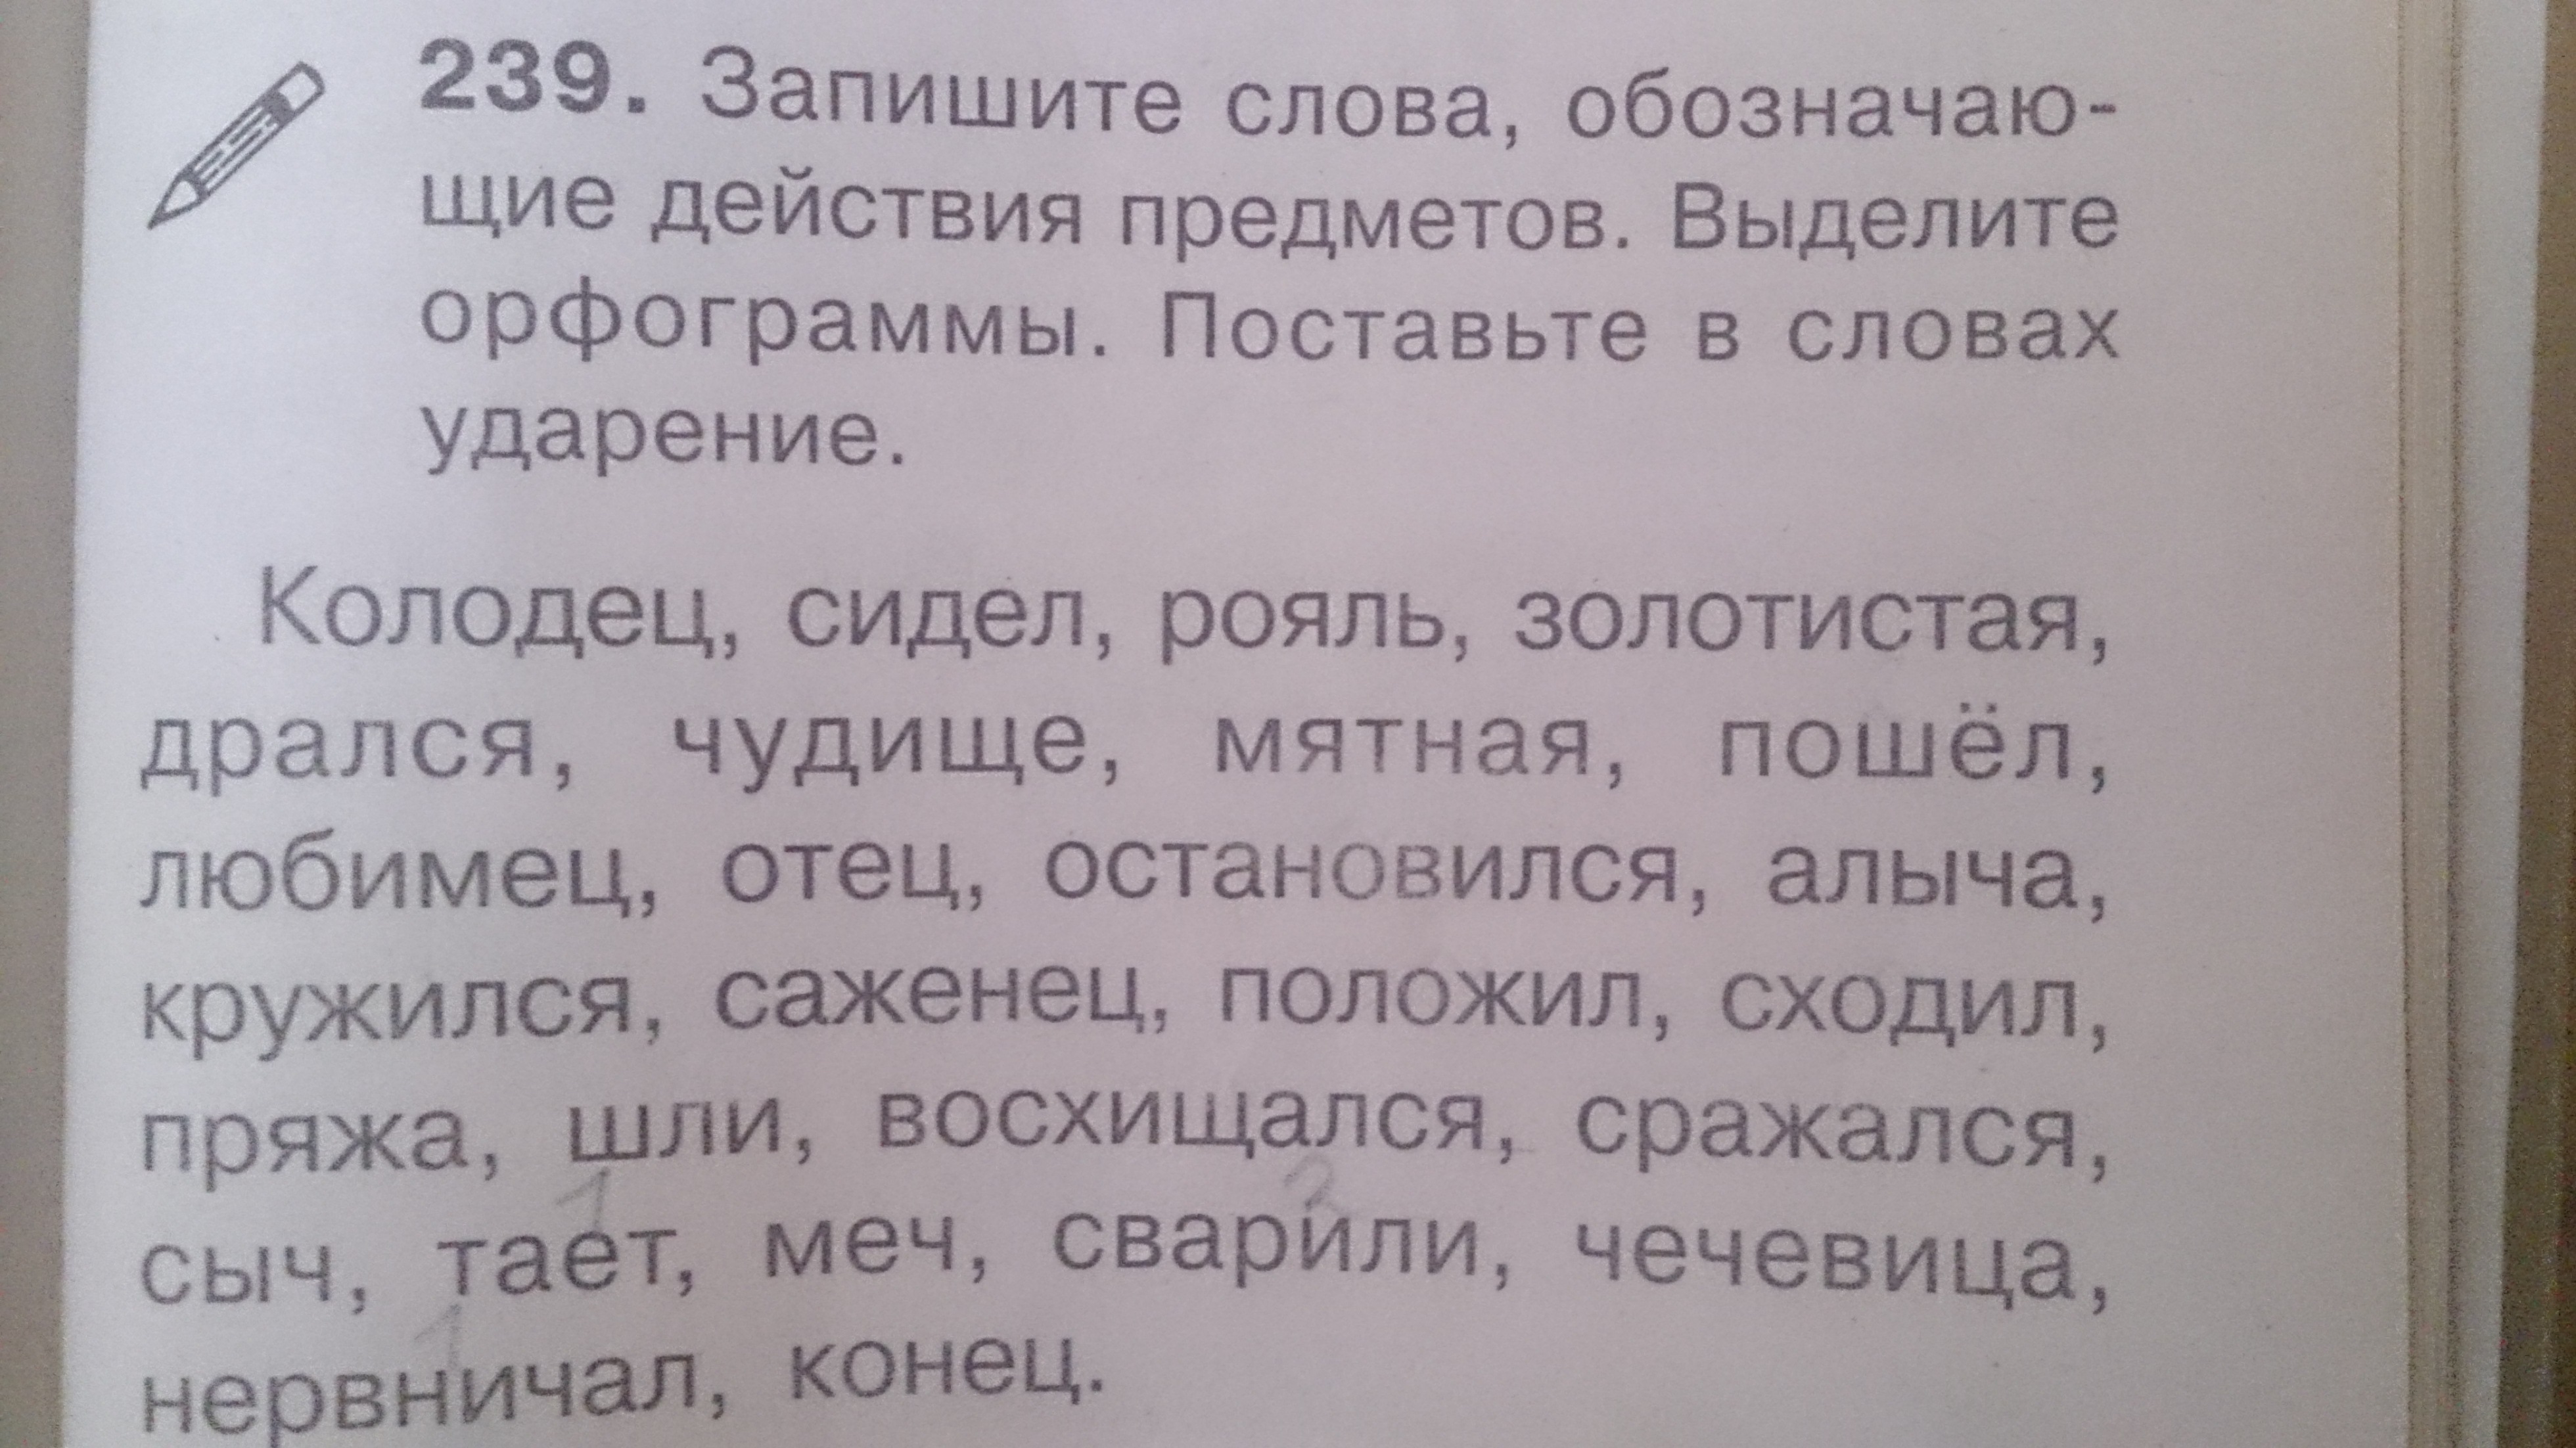 Русский язык запиши слова в 3 столбика